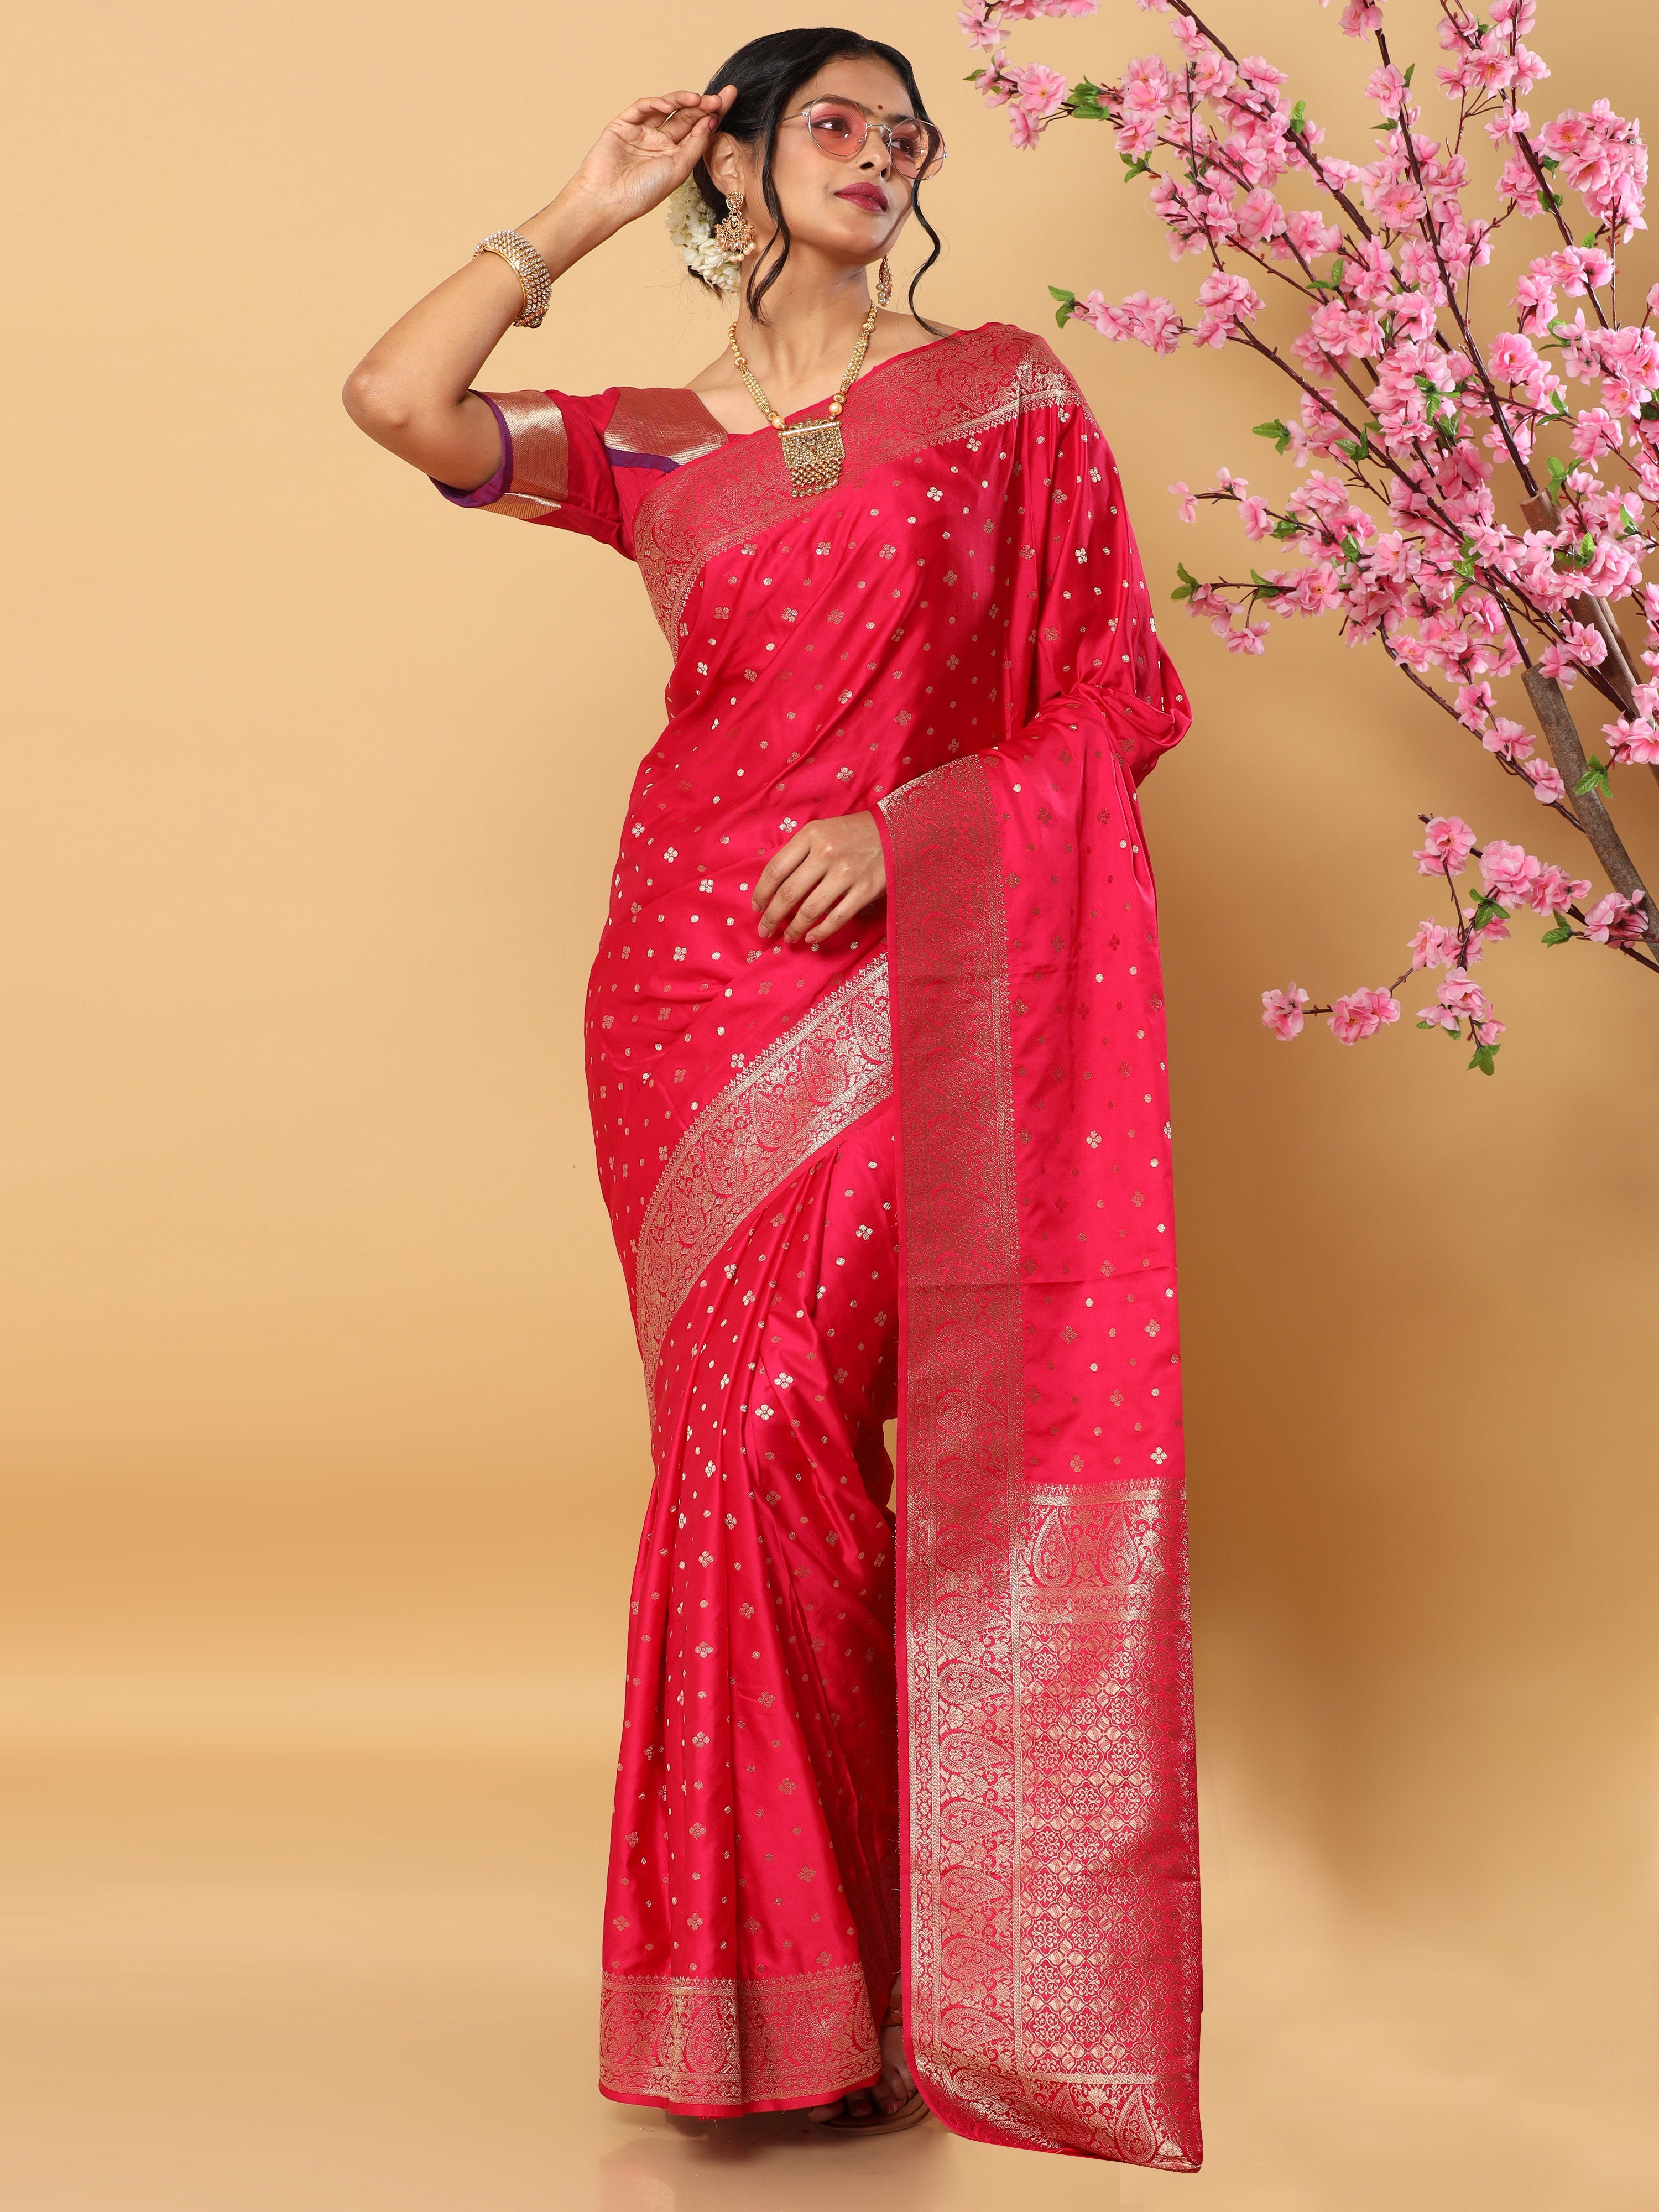 HerClozet Women's Banarasi Boota Gaji Silk Gold Zari Saree-6.3 Mtr(Red)